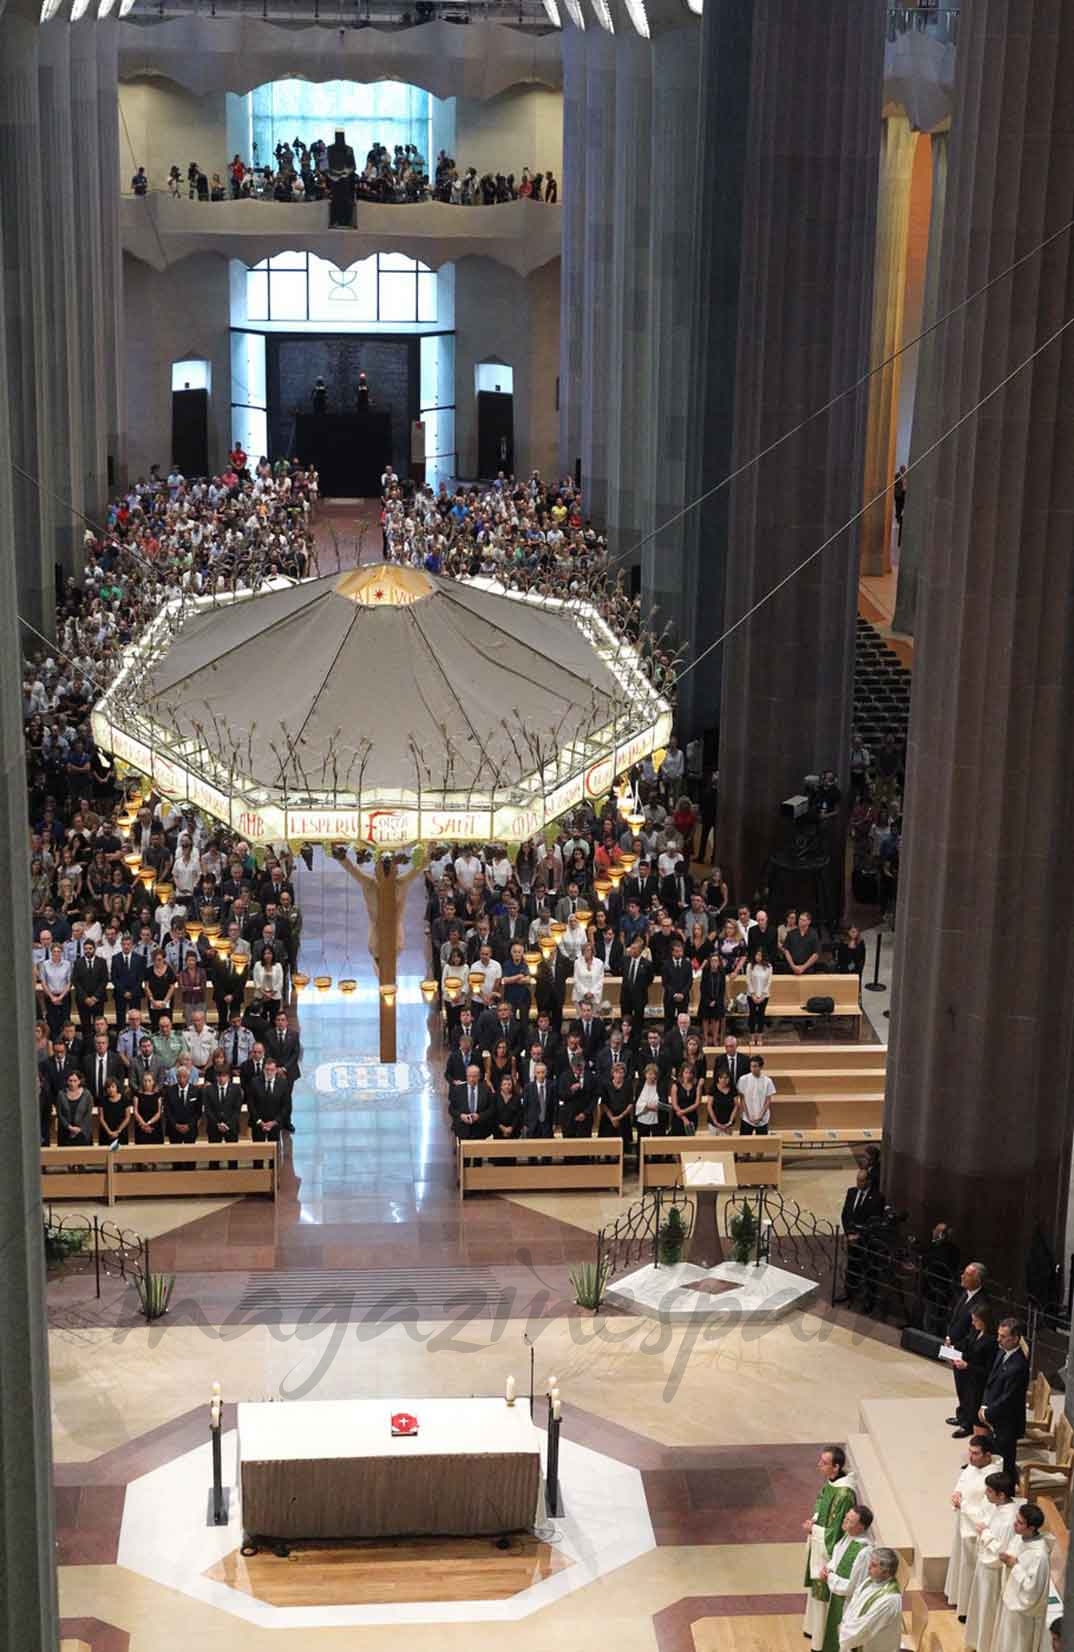 Vista del interior de la Sagrada Familia durante la ceremonia religiosa - Casa S.M. El Rey